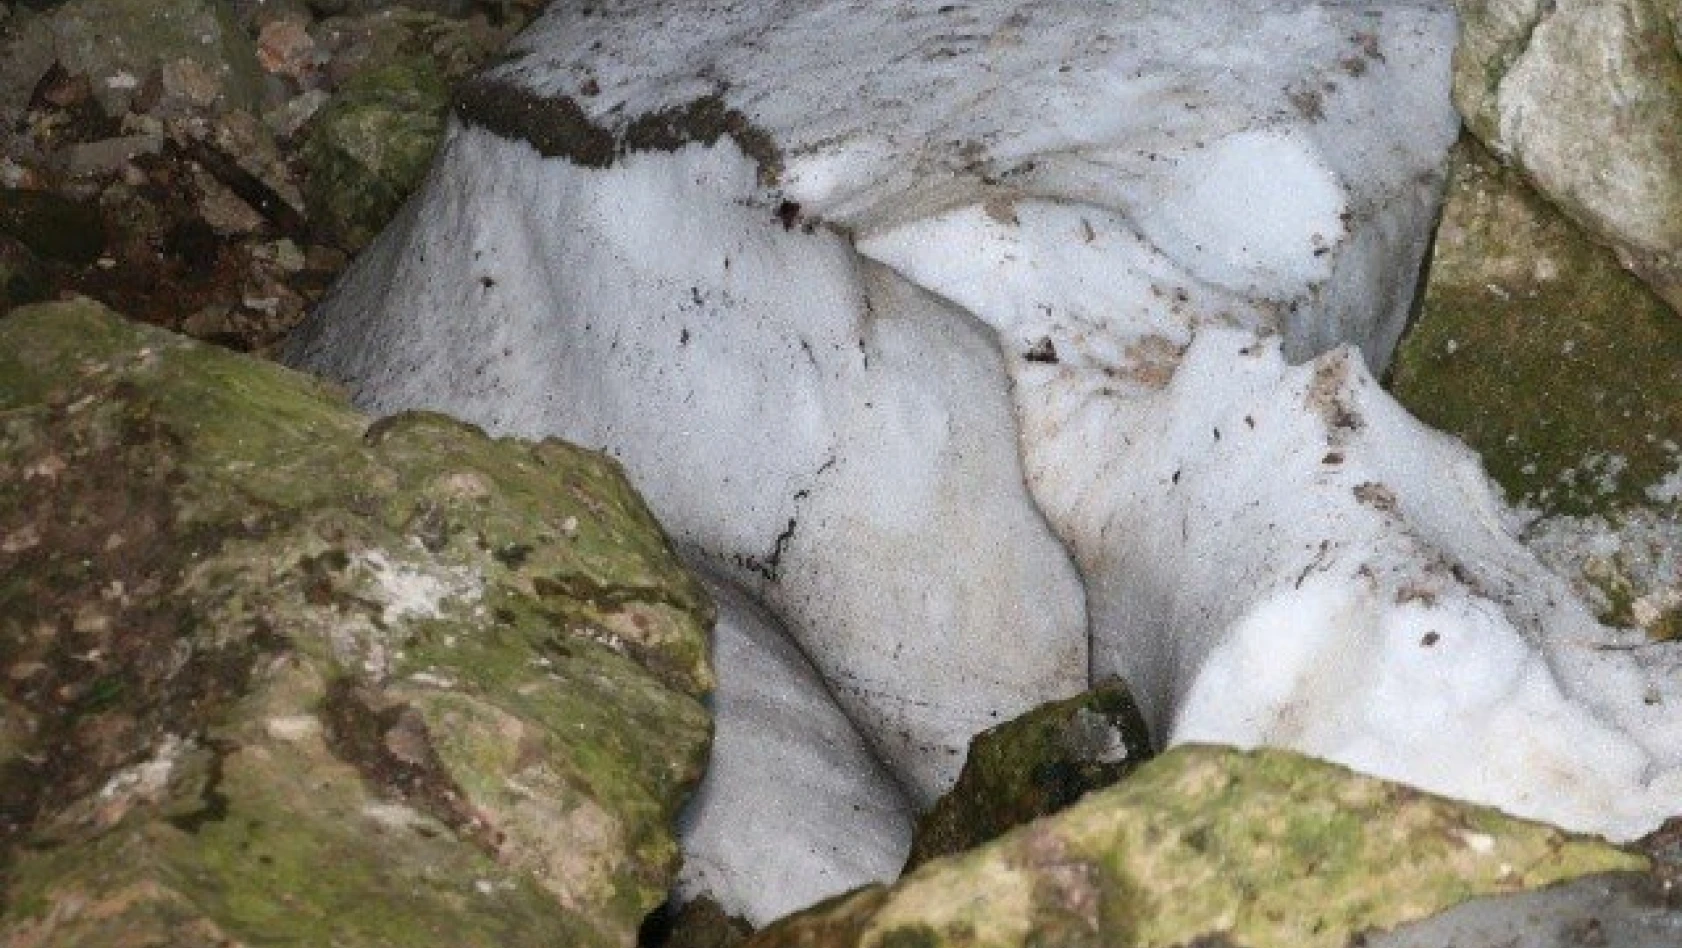 Karı ağustos sıcağında bile erimeyen mağara ilgi çekiyor